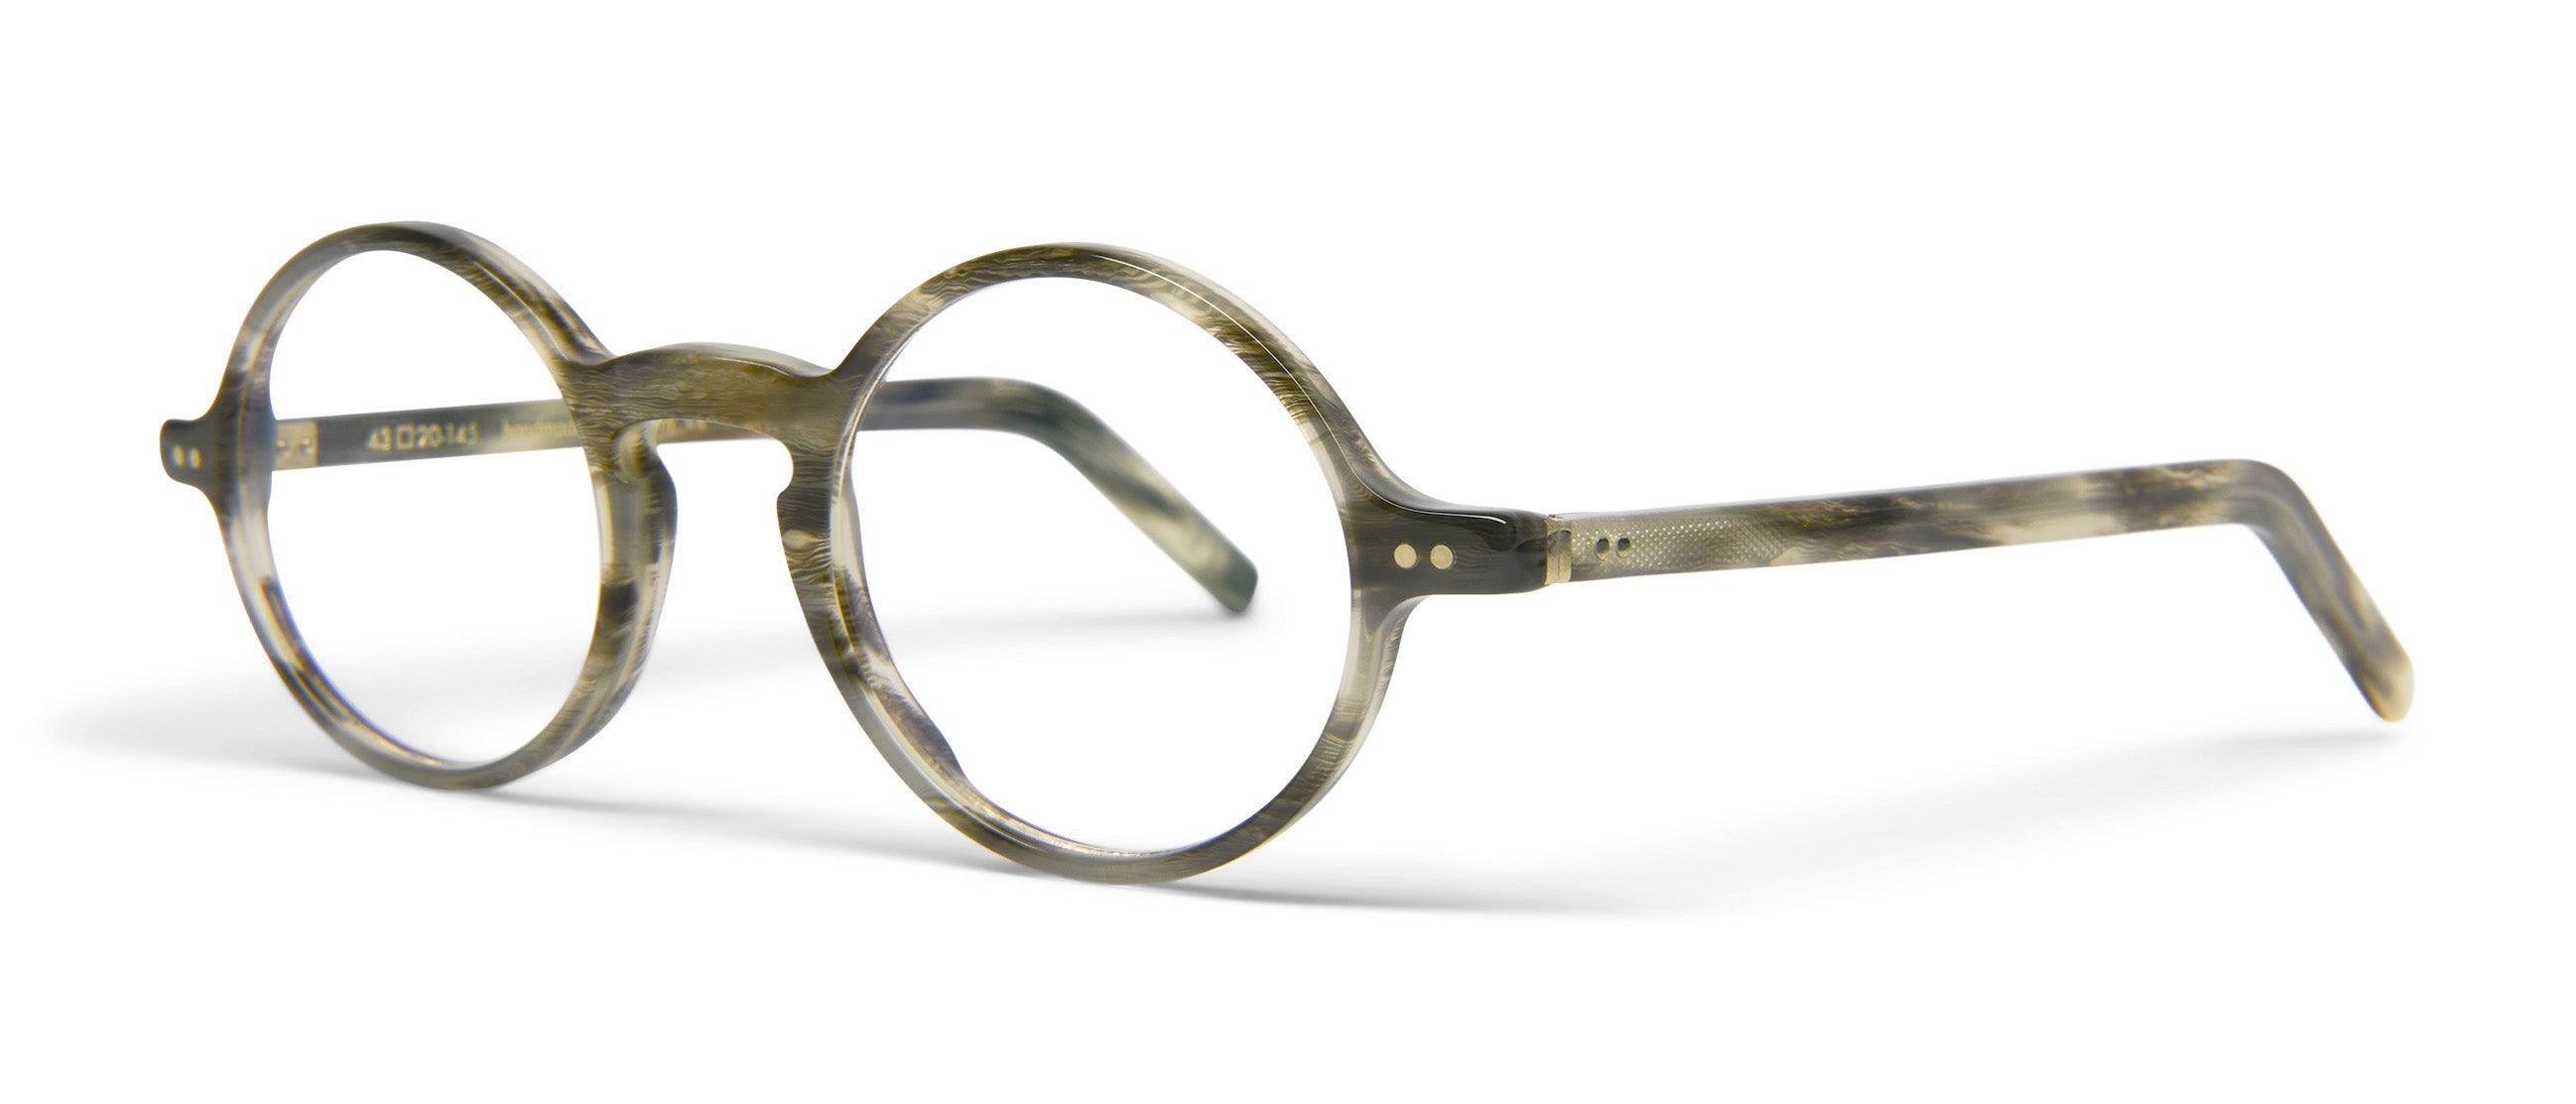 Khám phá thế giới với đôi kính áp tròng Lunor – chế độ siêu nét đến từng chi tiết. Cùng trải nghiệm thời trang và chất lượng kính áp tròng hàng đầu với Lunor.